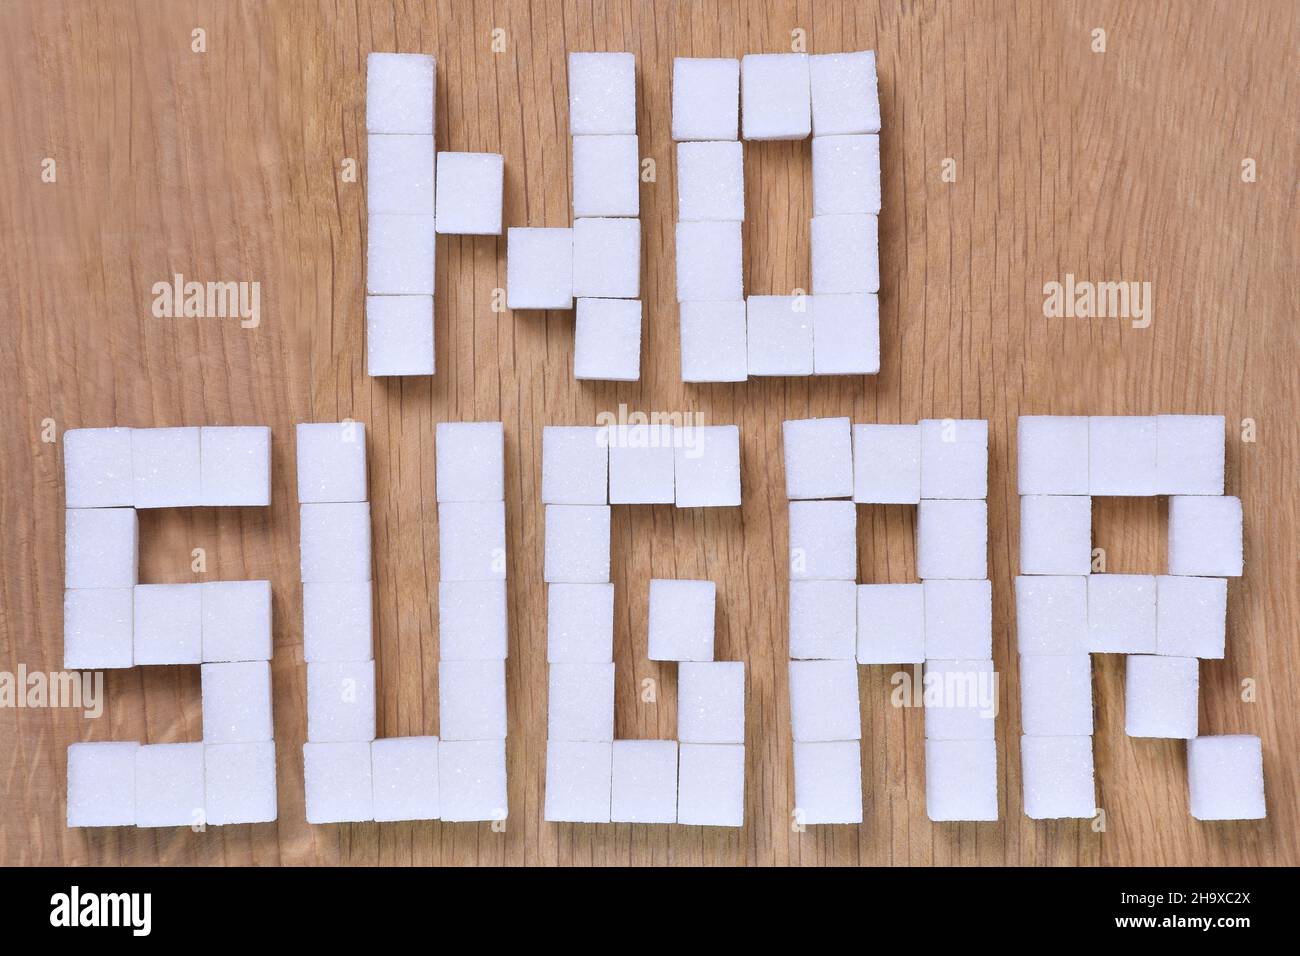 Les mots NO SUGAR, doublés de cubes de sucre raffiné sur fond de bois brun, sont interdits.Gros plan Banque D'Images